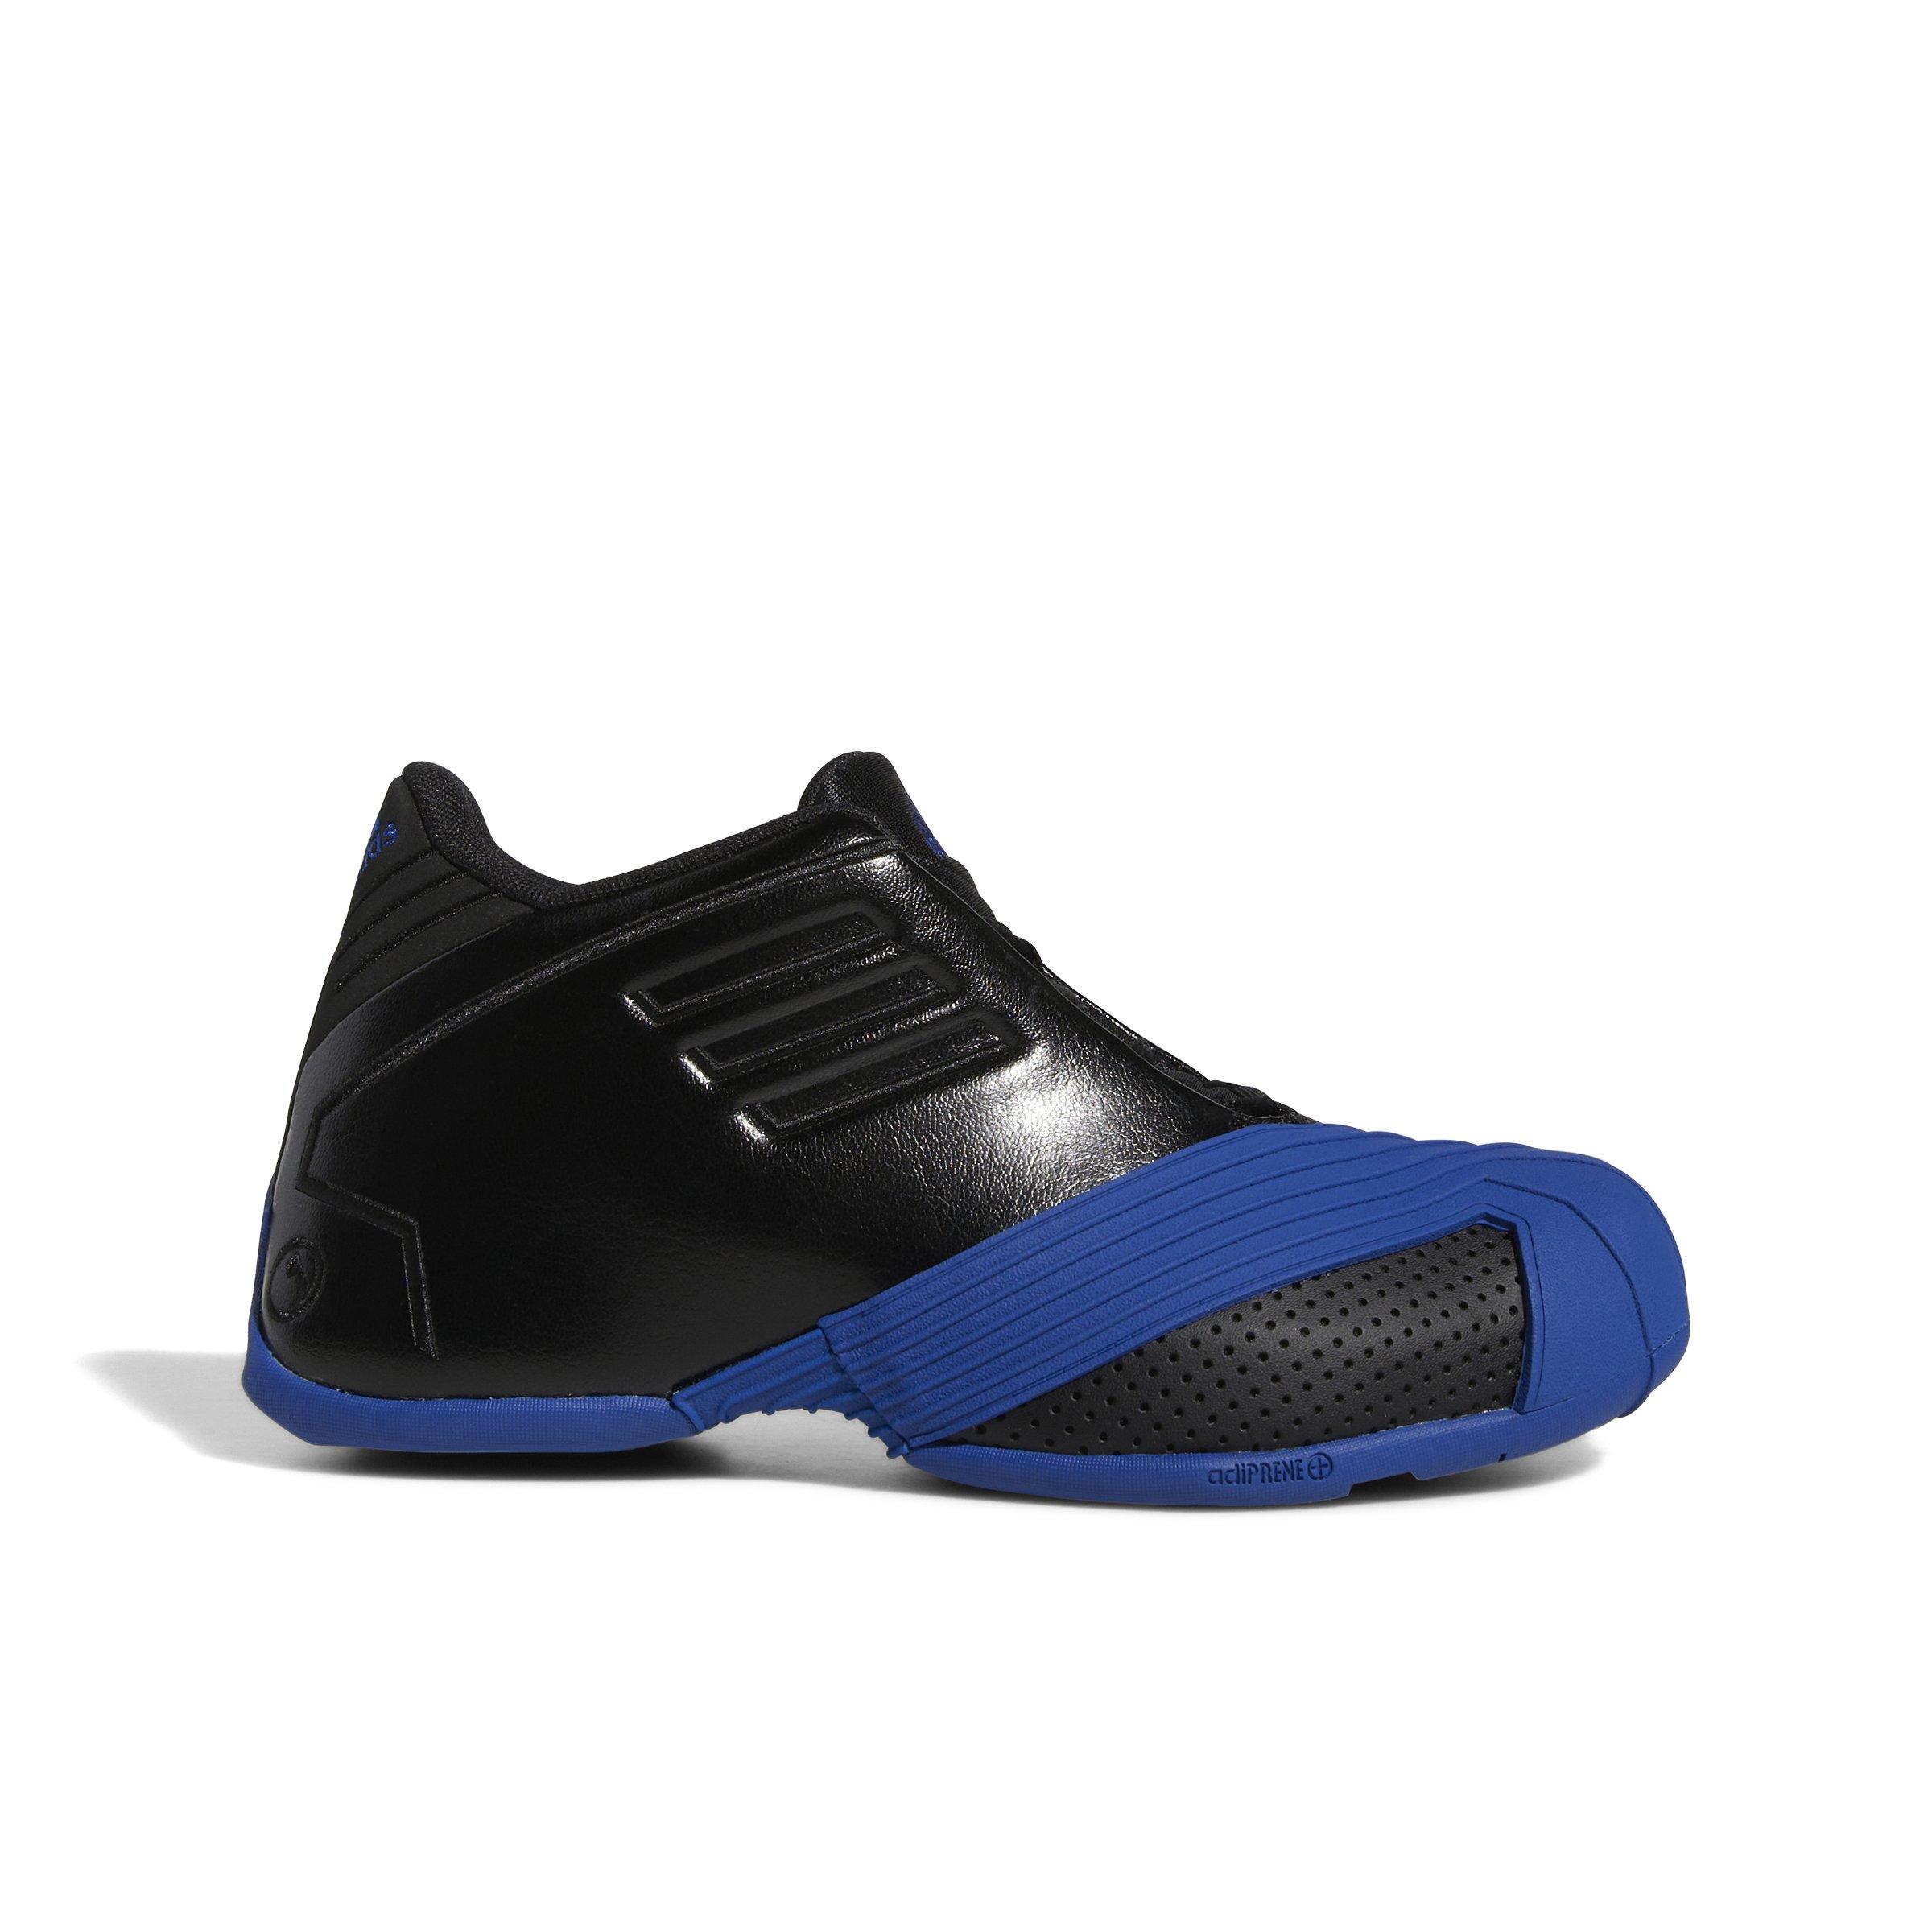 lamentar Zapatos desinfectante adidas T-Mac 1 "Core Black/Team Royal Blue/Core Black" Grade School Boys'  Basketball Shoe